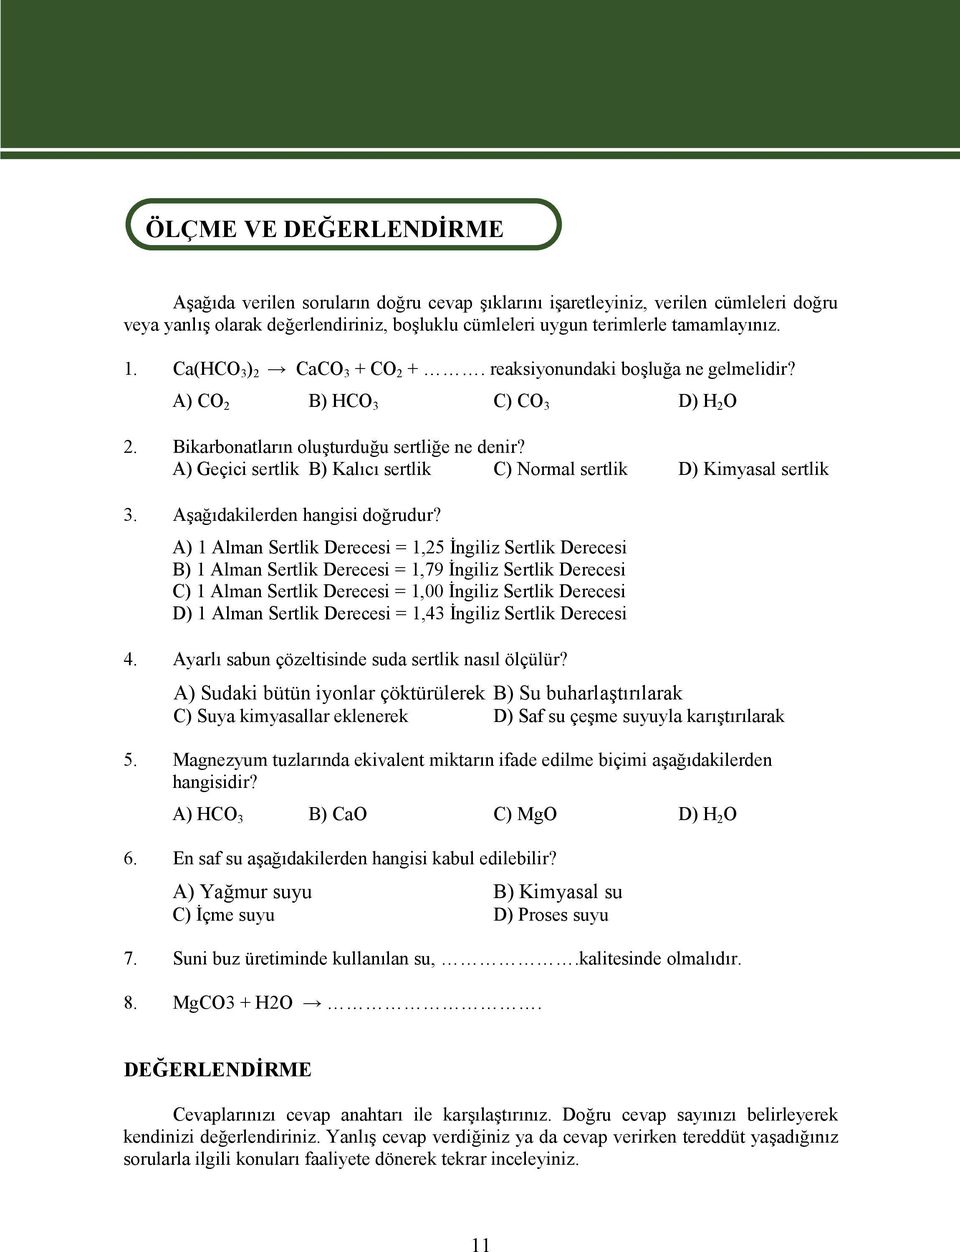 A) Geçici sertlik B) Kalıcı sertlik C) Normal sertlik D) Kimyasal sertlik 3. Aşağıdakilerden hangisi doğrudur?